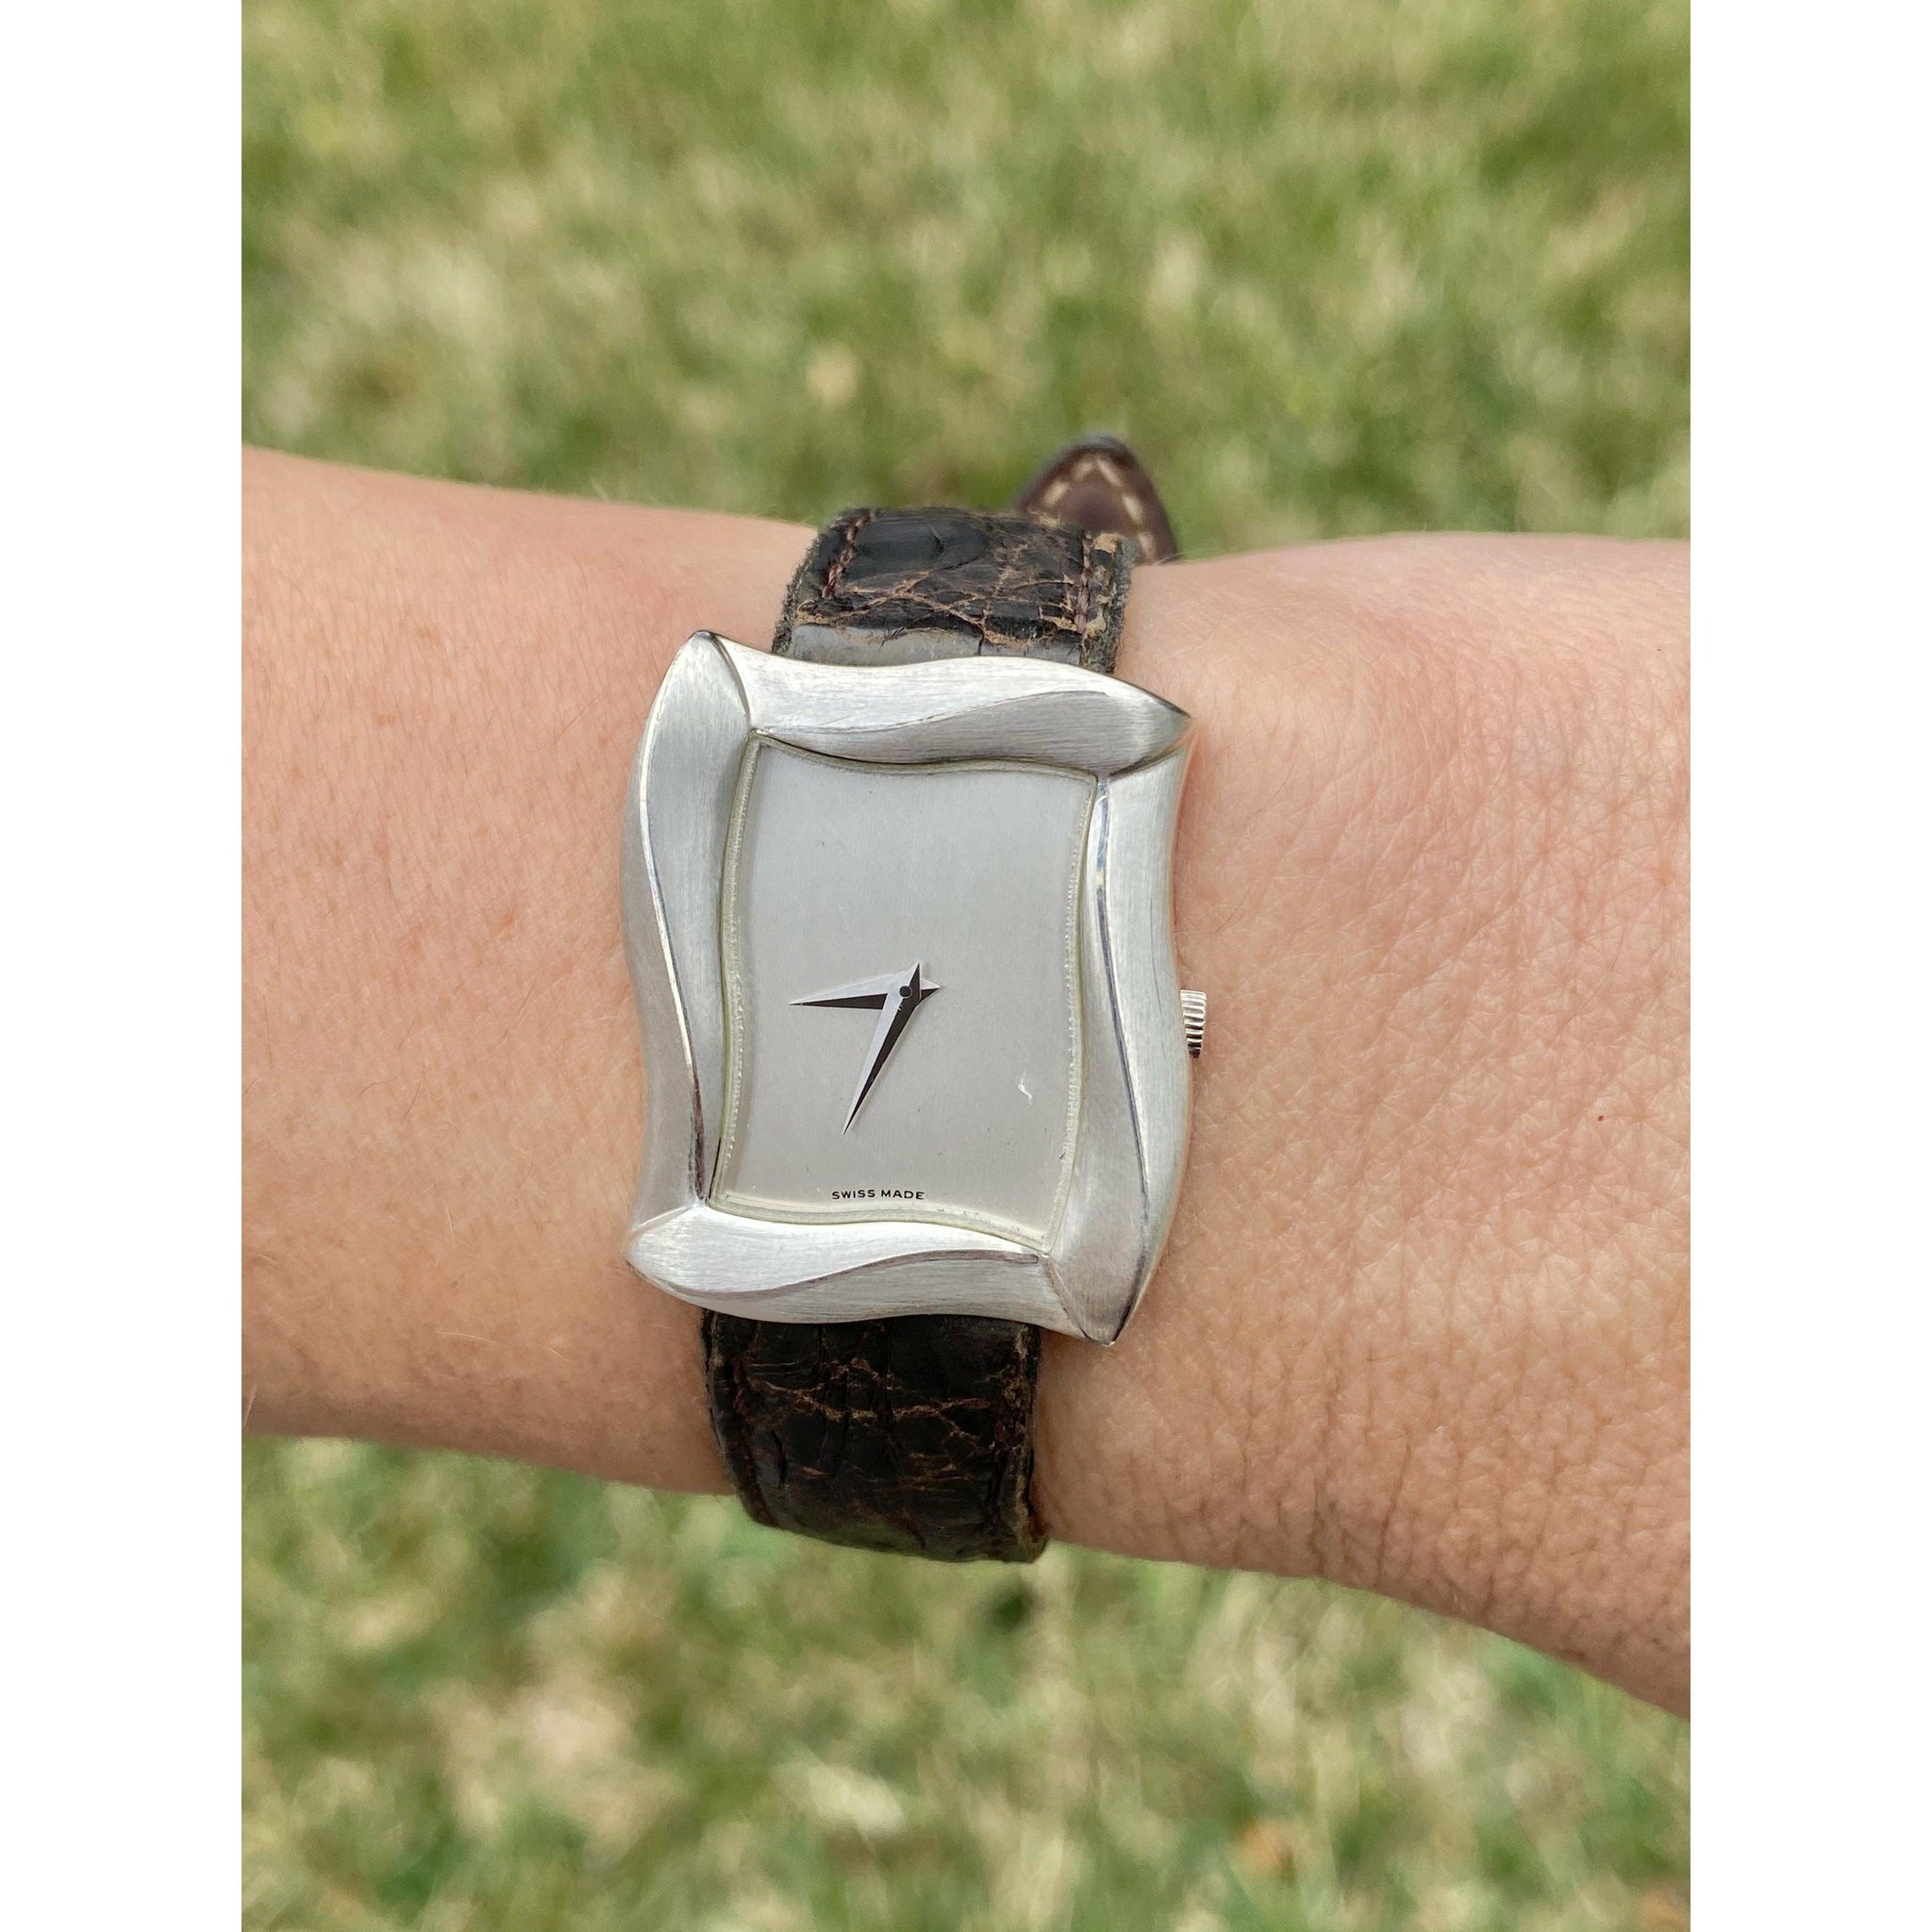 Angela Cummings Tank Style Women's Wrist Watch in Leather Strap-watch-ASSAY